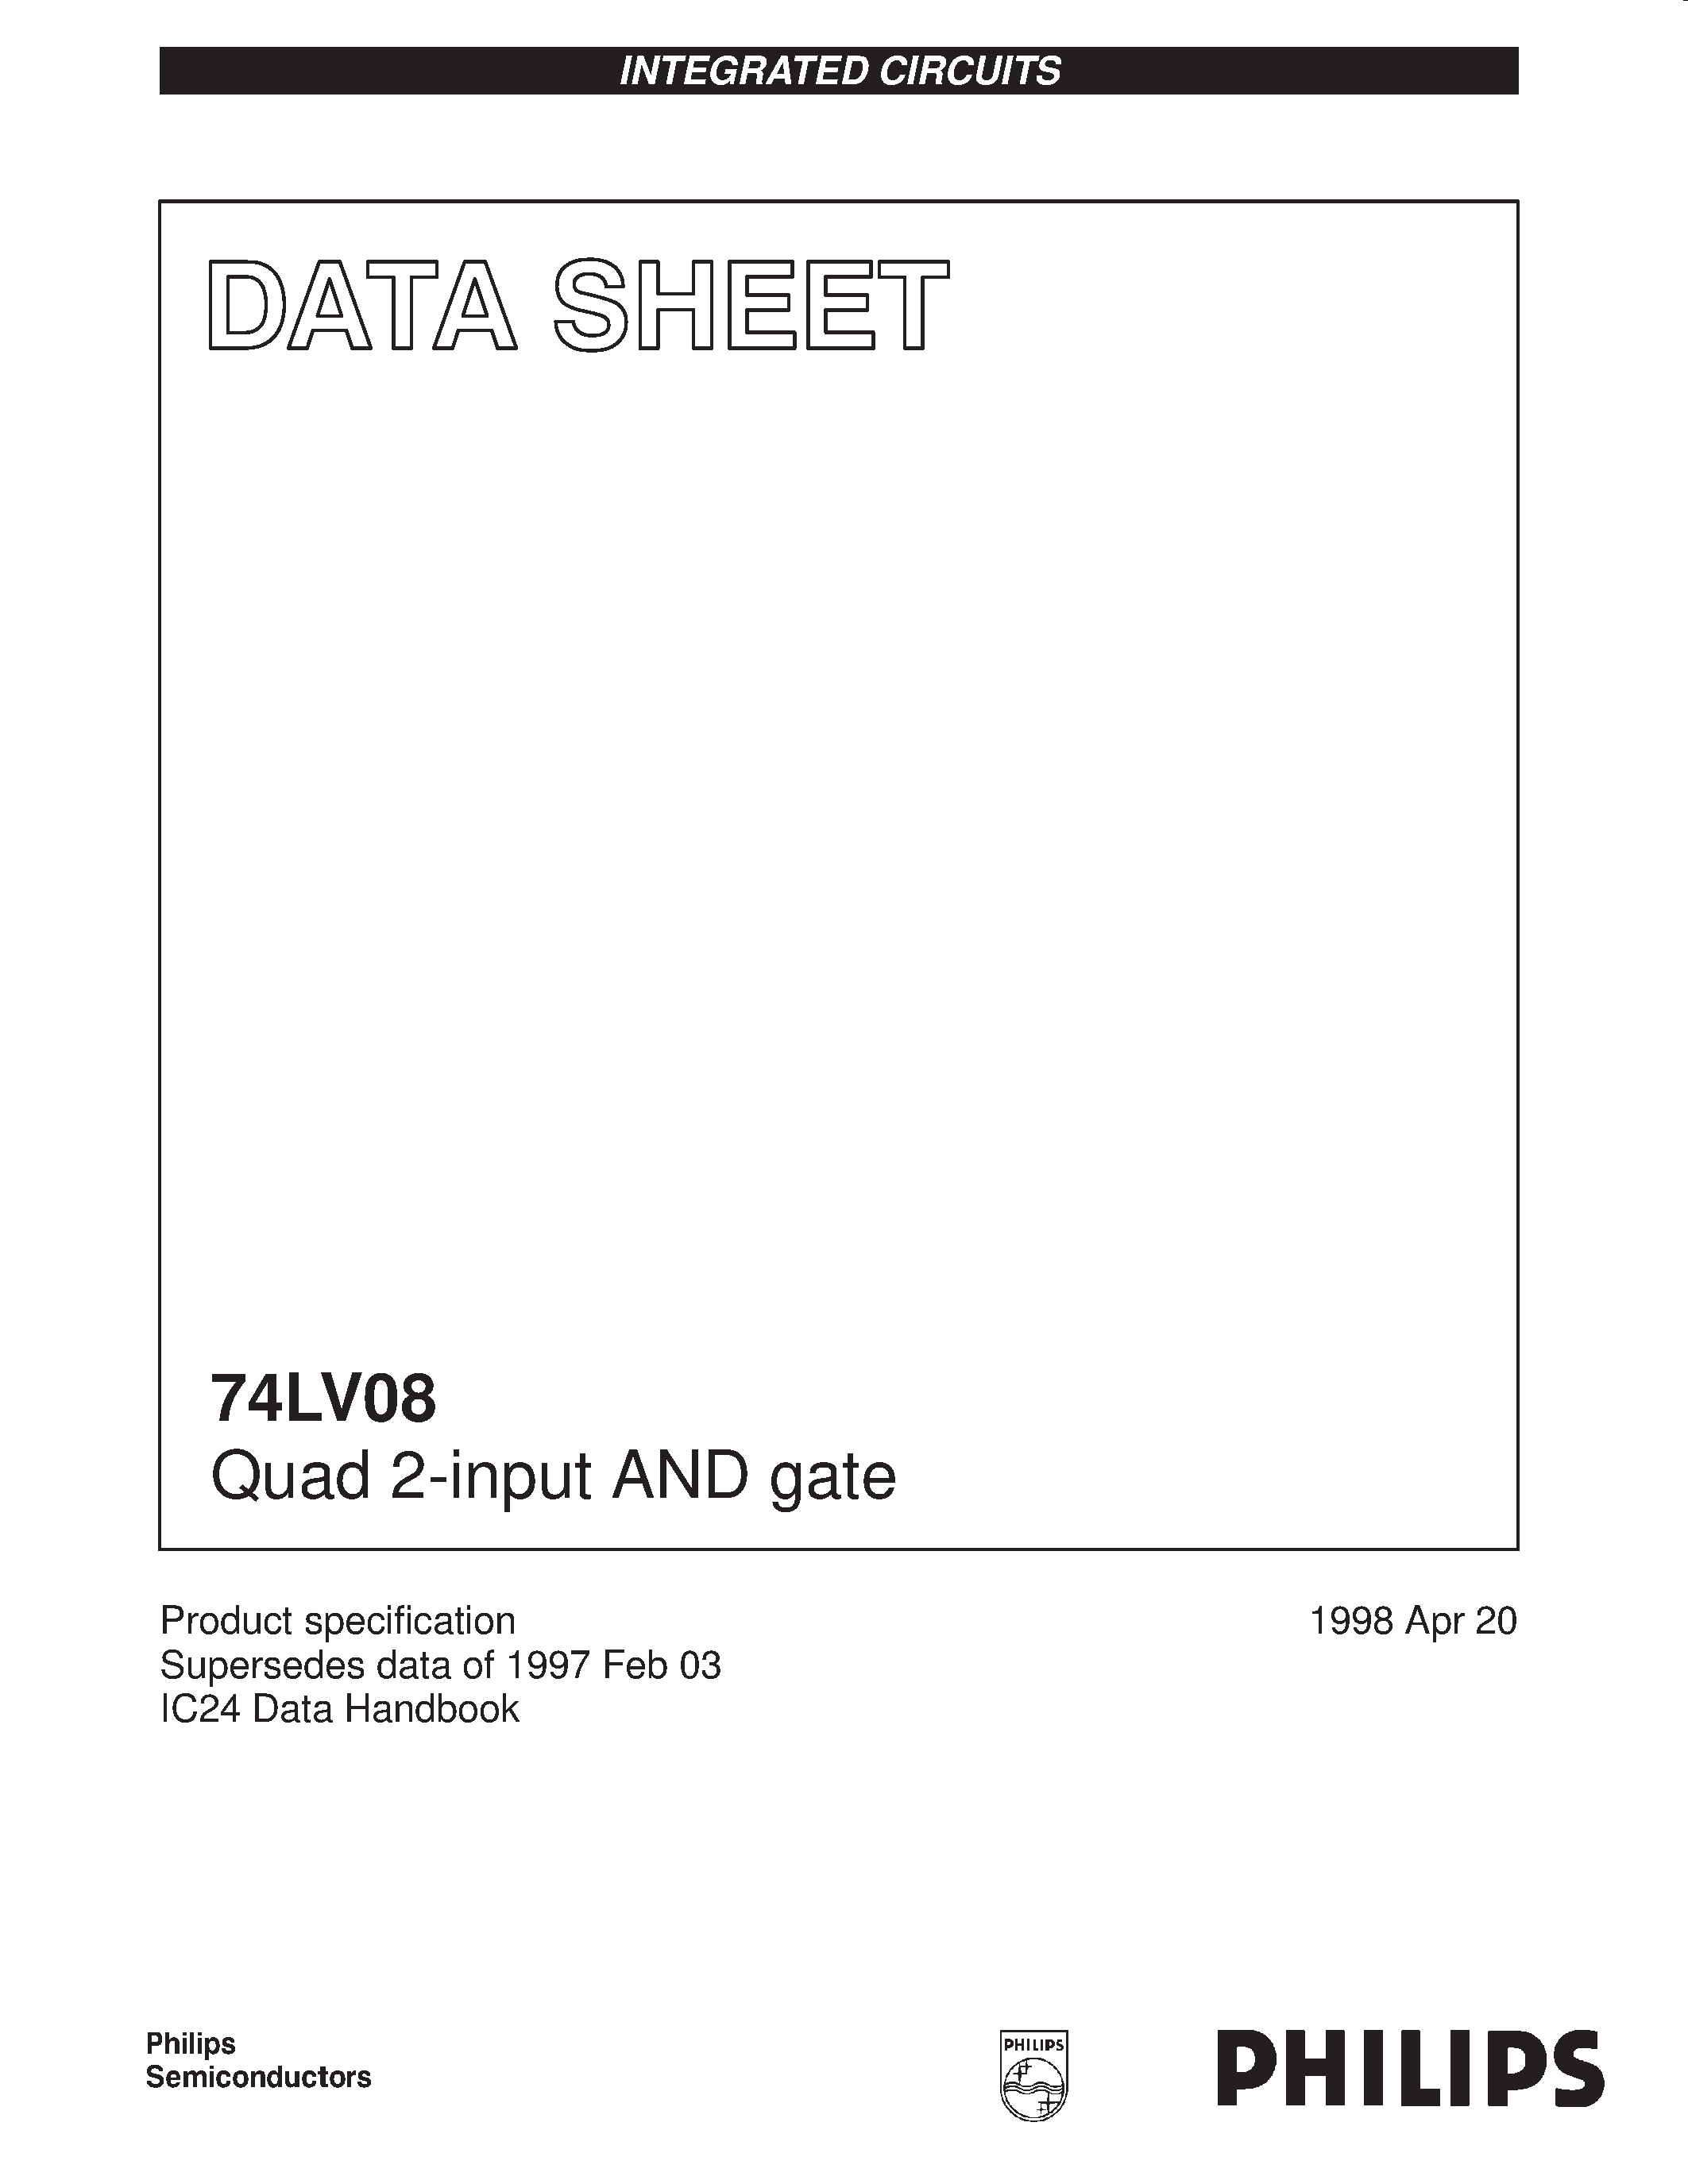 Даташит 74LV08 - Quad 2-input AND gate страница 1